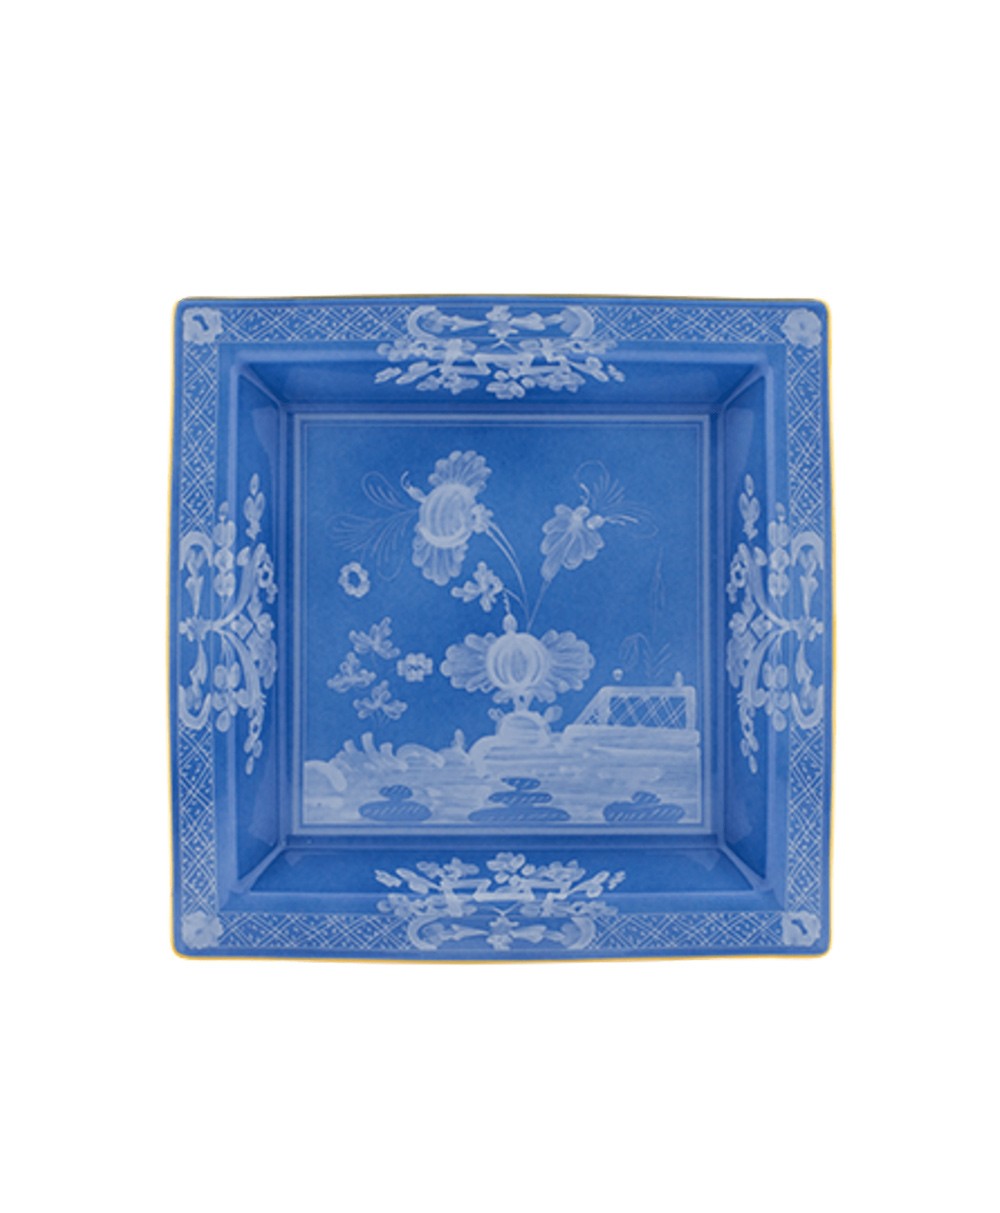 Produktbild "Oriente Pervinca Platte" von Ginori 1735 im RAUM Concept store